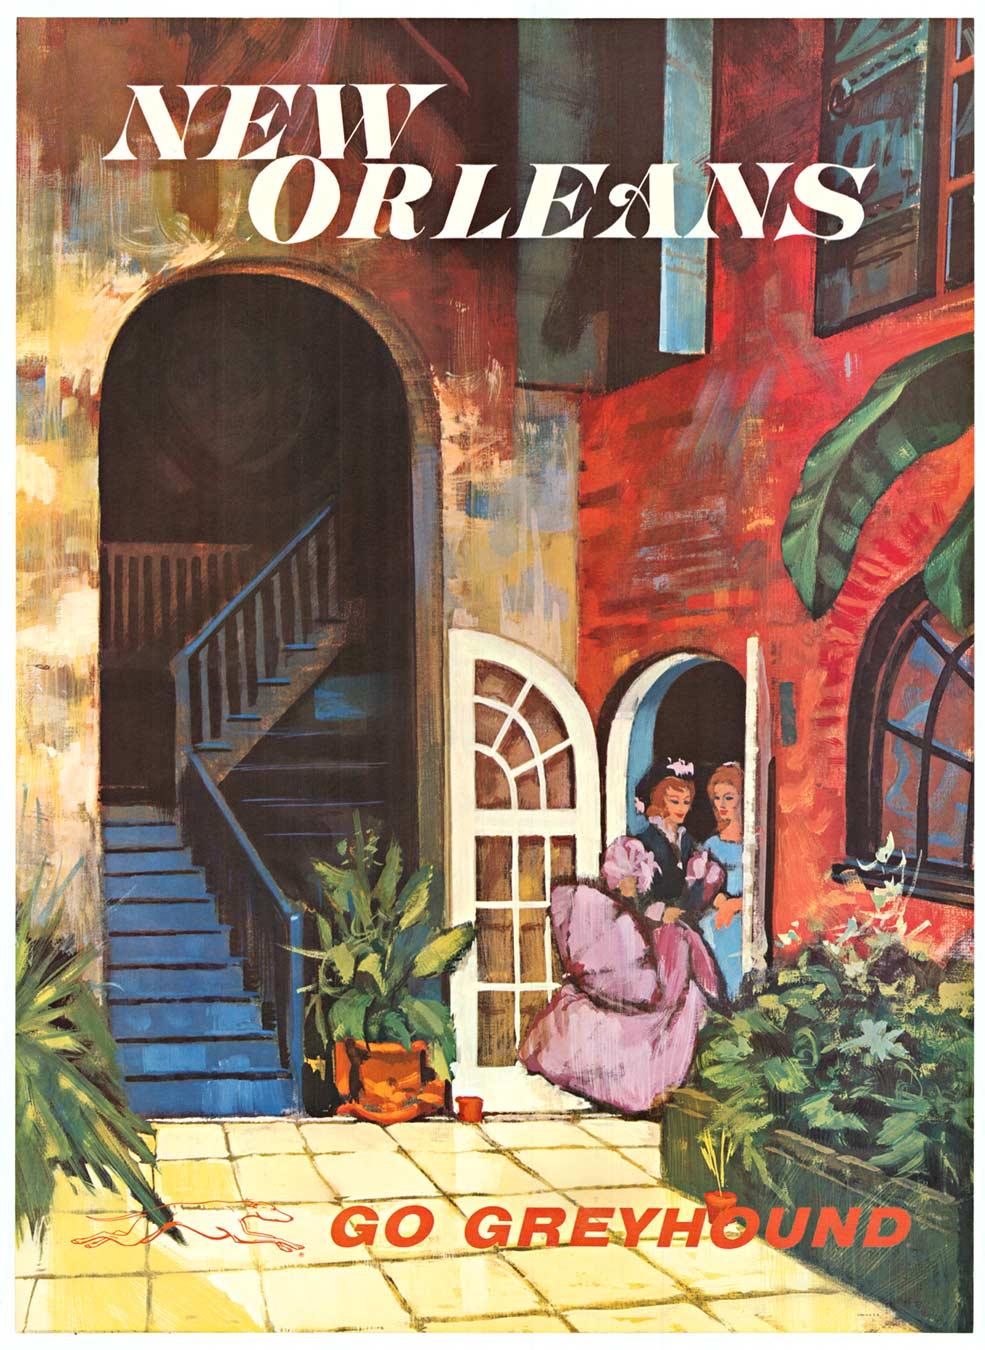 Interior Print Unknown - New Orleans Go Greyhound original vintage travel poster